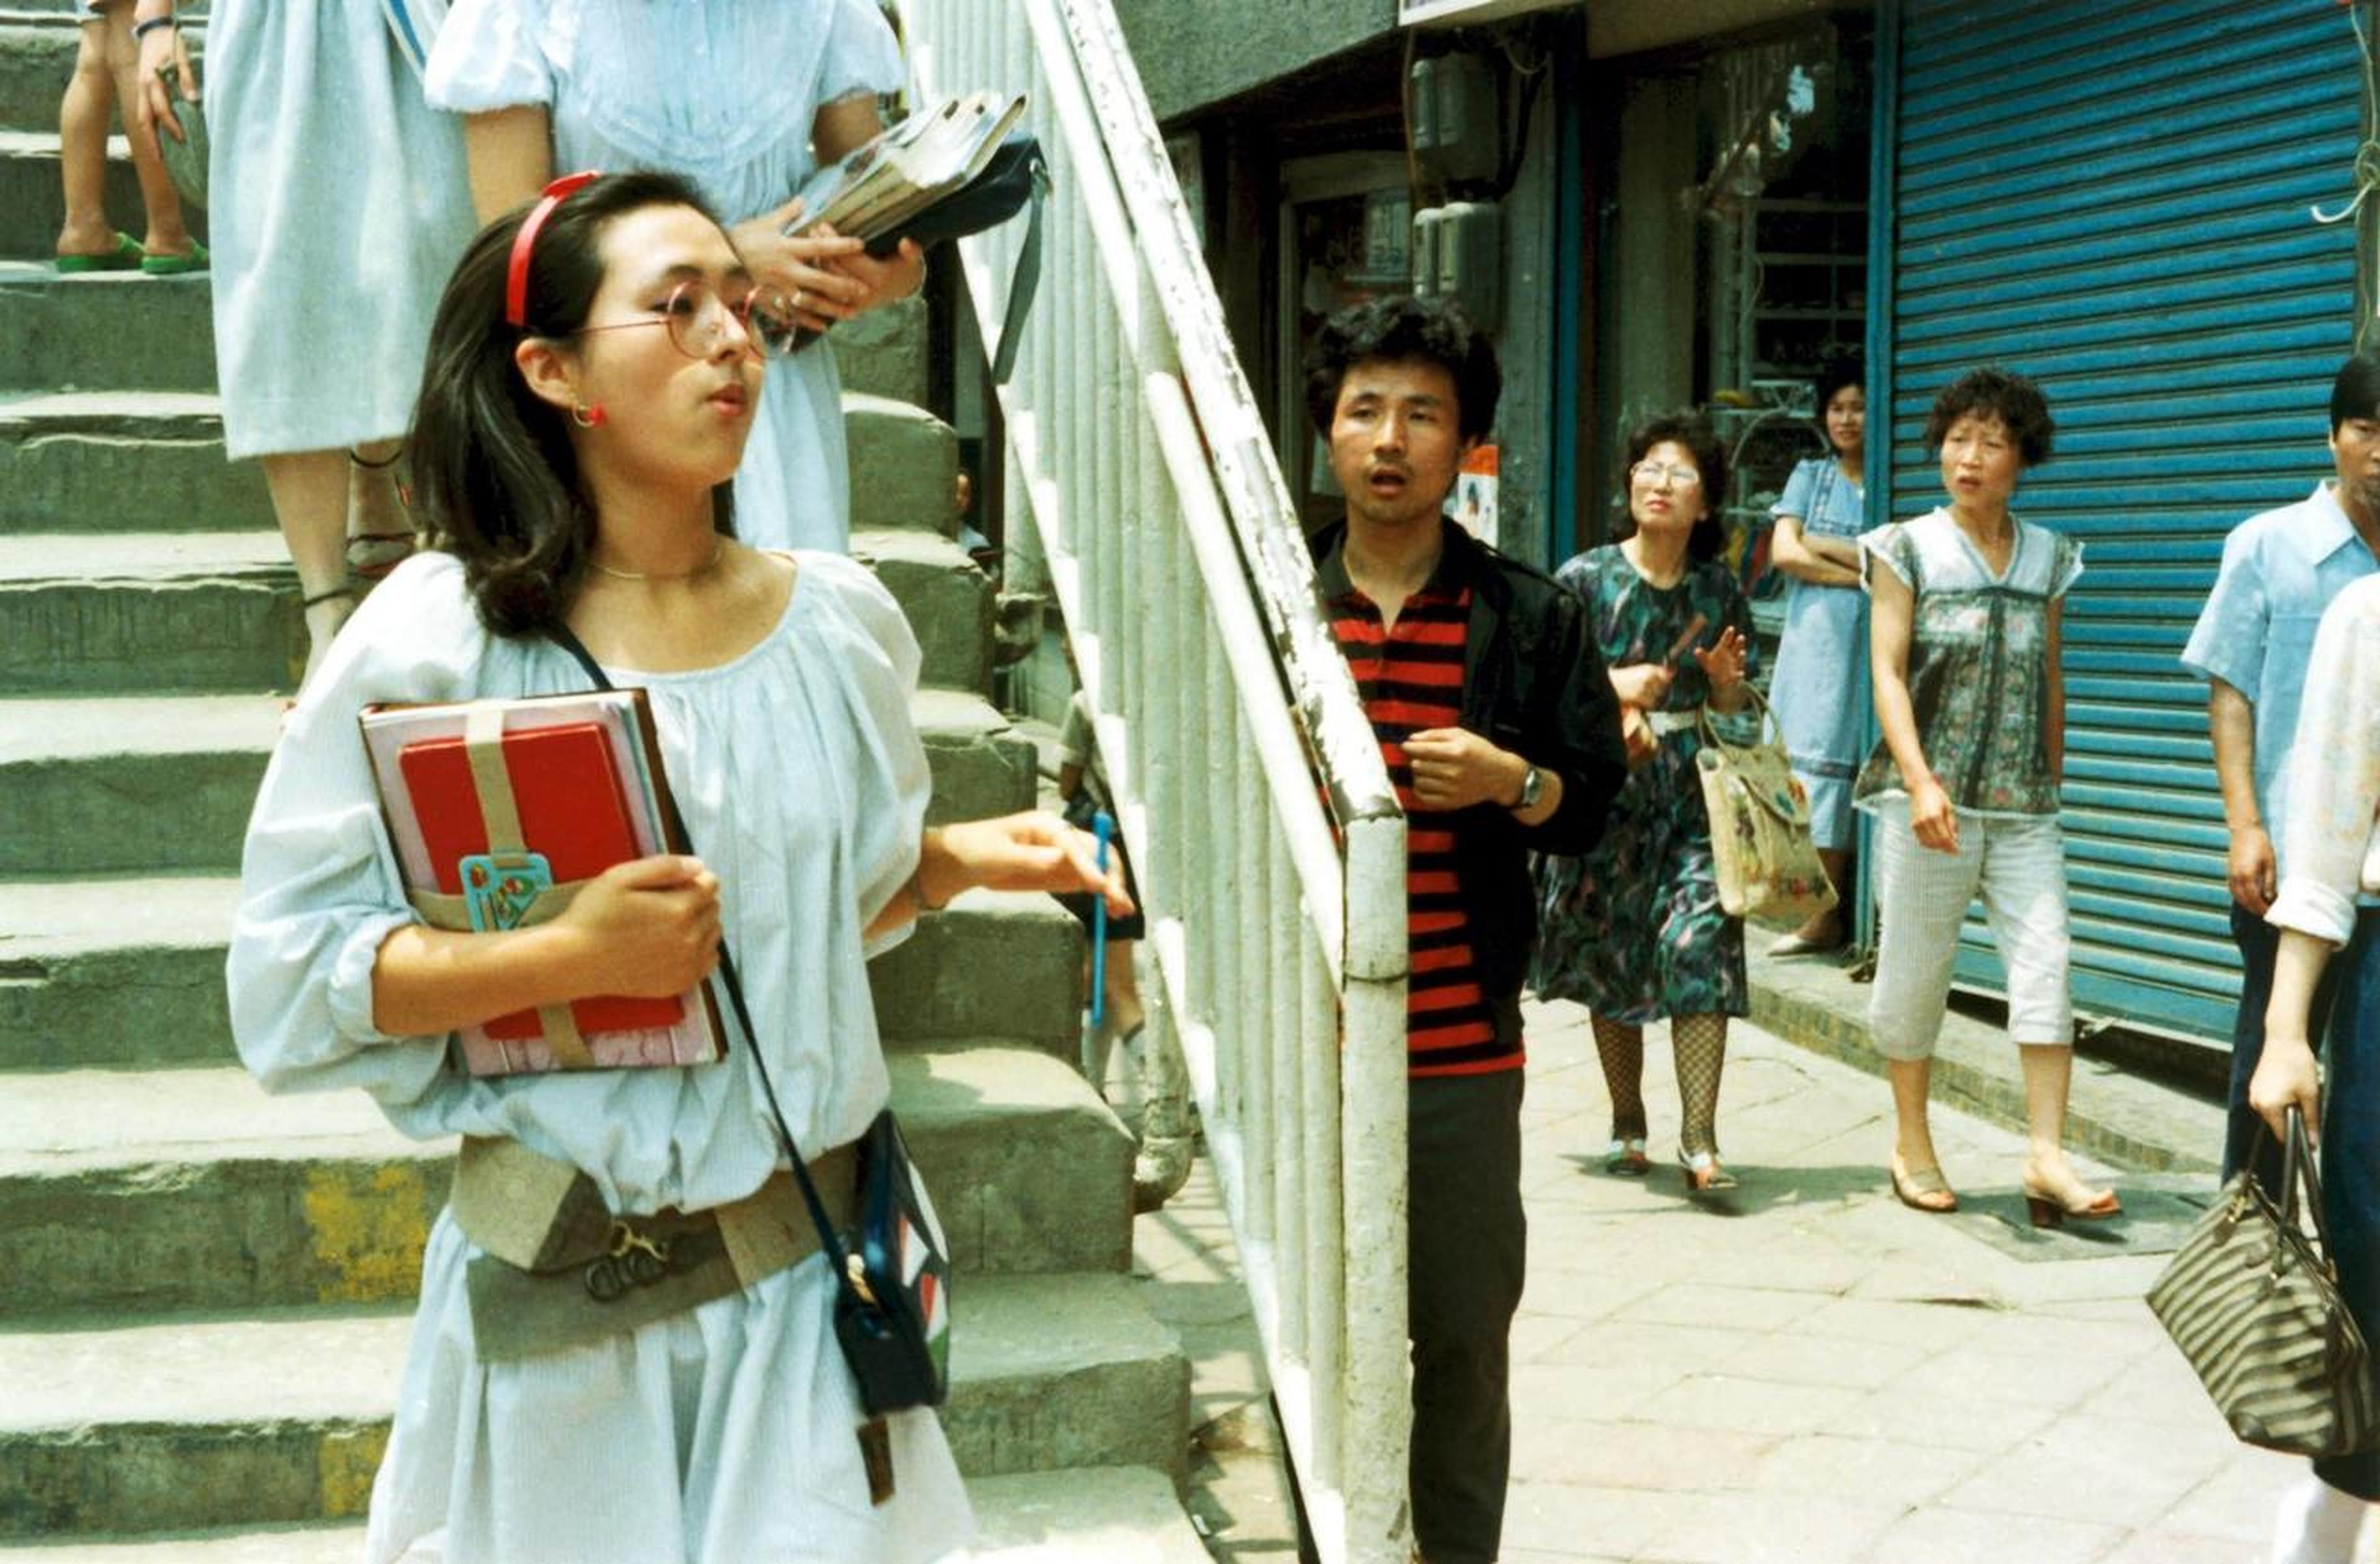 【1980-1990】《傻瓜宣言》(1983)导演李长镐。《傻瓜宣言》是一次电影形式上的全新尝试，同时也是上个世纪80年代韩国电影界不可多得的一部佳作。它完全推翻了现实主义的创作传统，运用大胆的想象力直观地表现了军人政权下整个社会的窒息感，并对资本主义外衣下的韩国社会做了犀利的肢解。该片在1984年捧得了芝加哥电影节最佳影片奖。